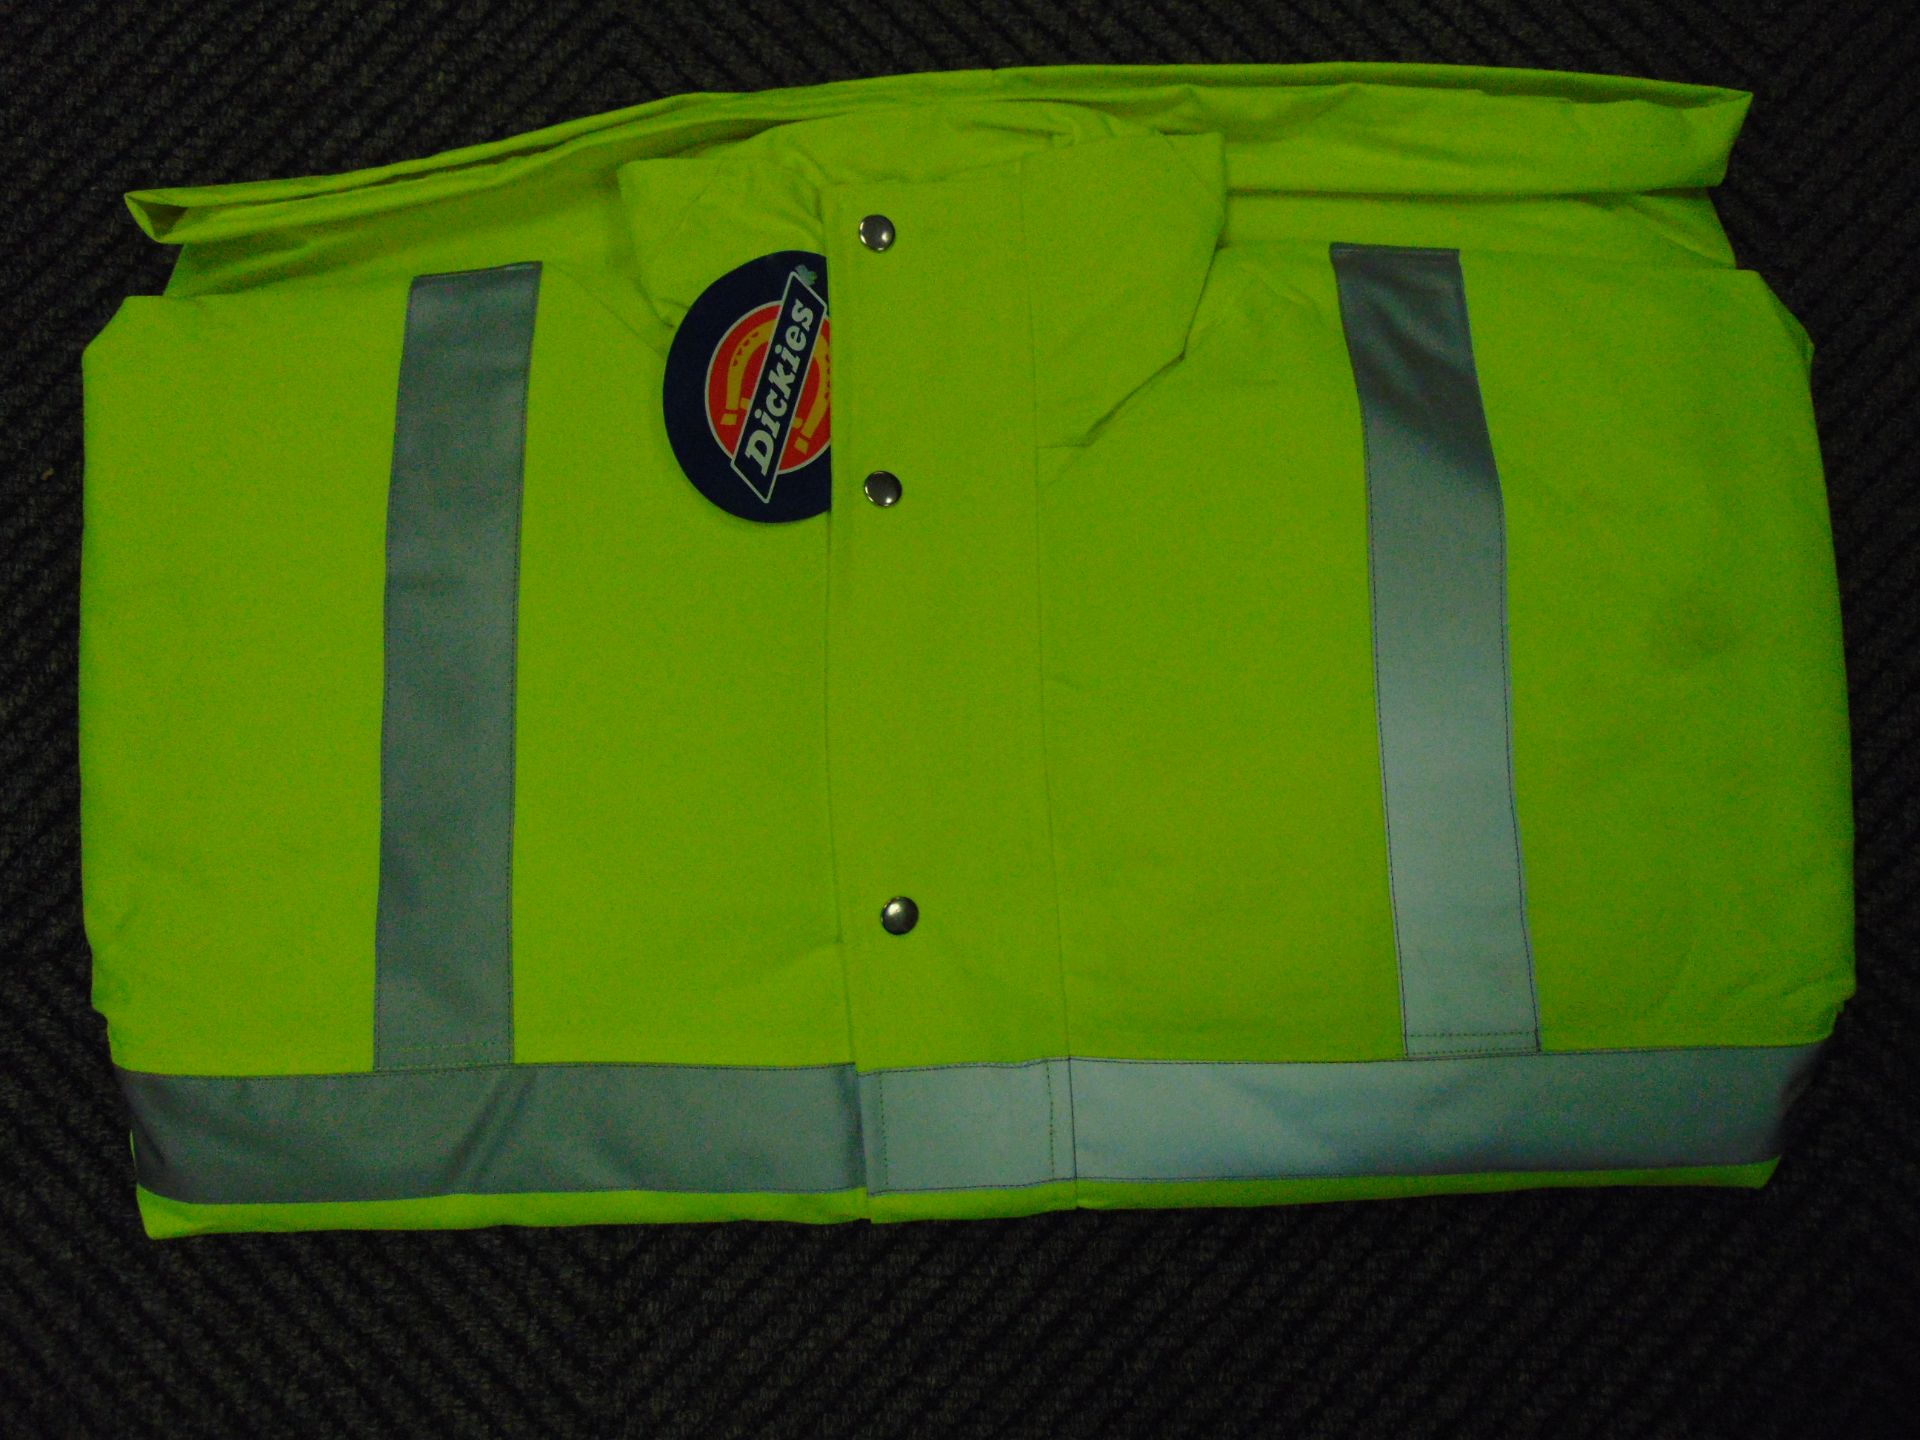 UNISSUED Hi Visibility Florescent SECURITY Jacket. Size Medium. - Image 4 of 5